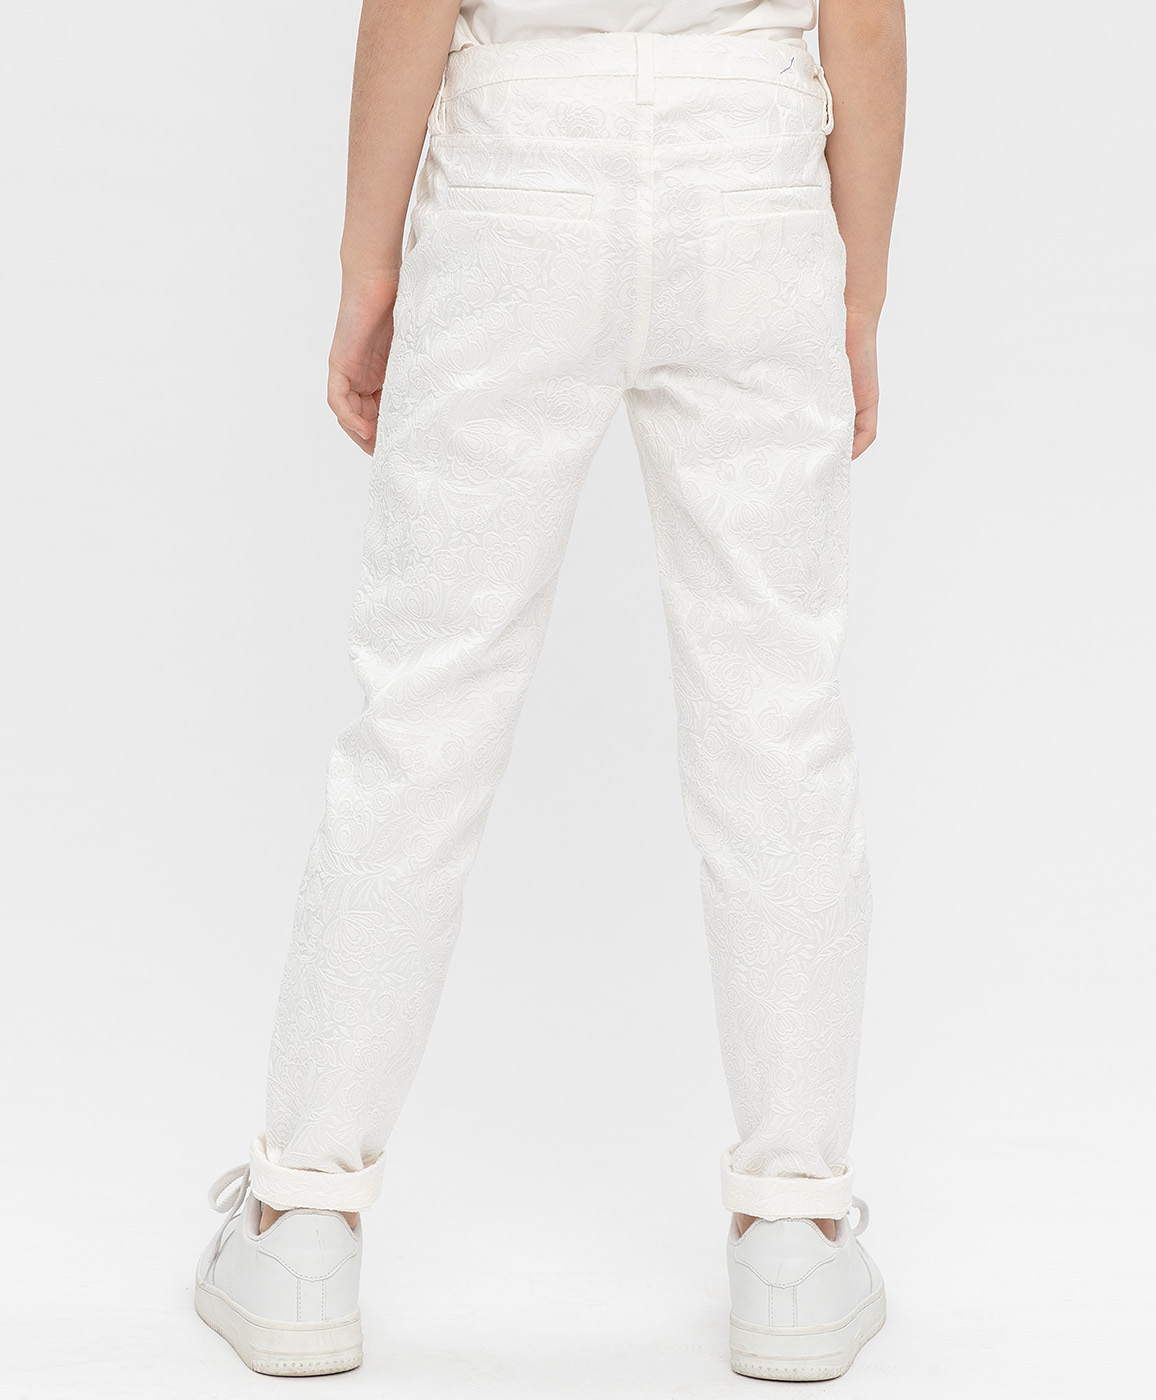 Белые жаккардовые брюки Button Blue 120BBGP63010200, размер 104, цвет белый - фото 4